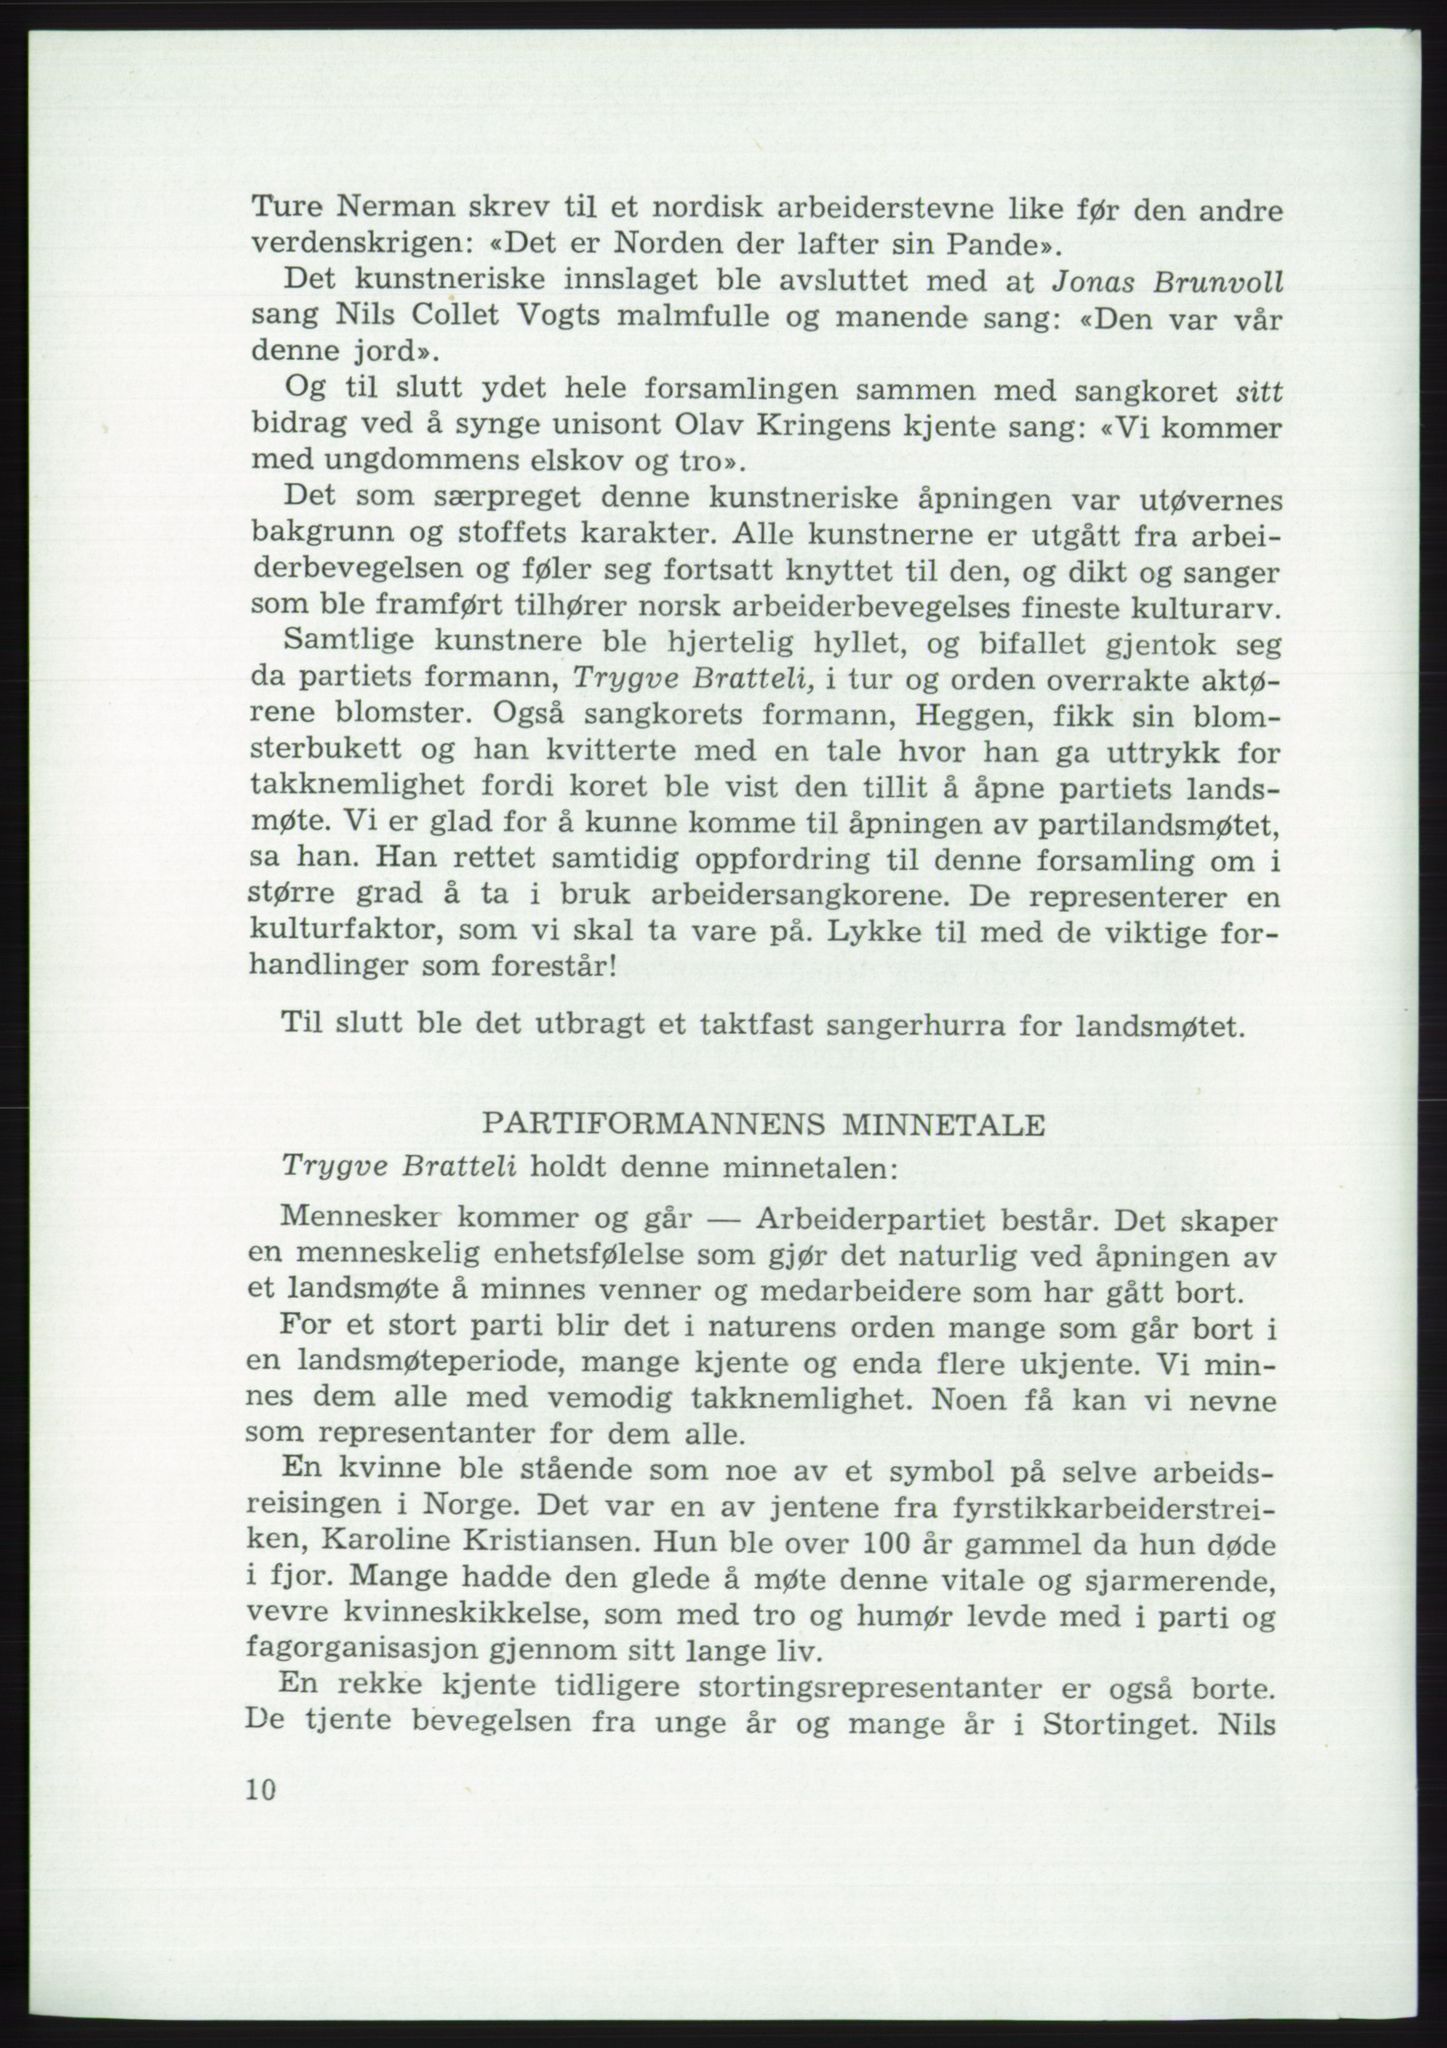 Det norske Arbeiderparti - publikasjoner, AAB/-/-/-: Protokoll over forhandlingene på det 45. ordinære landsmøte 27.-30. mai 1973 i Oslo, 1973, s. 10